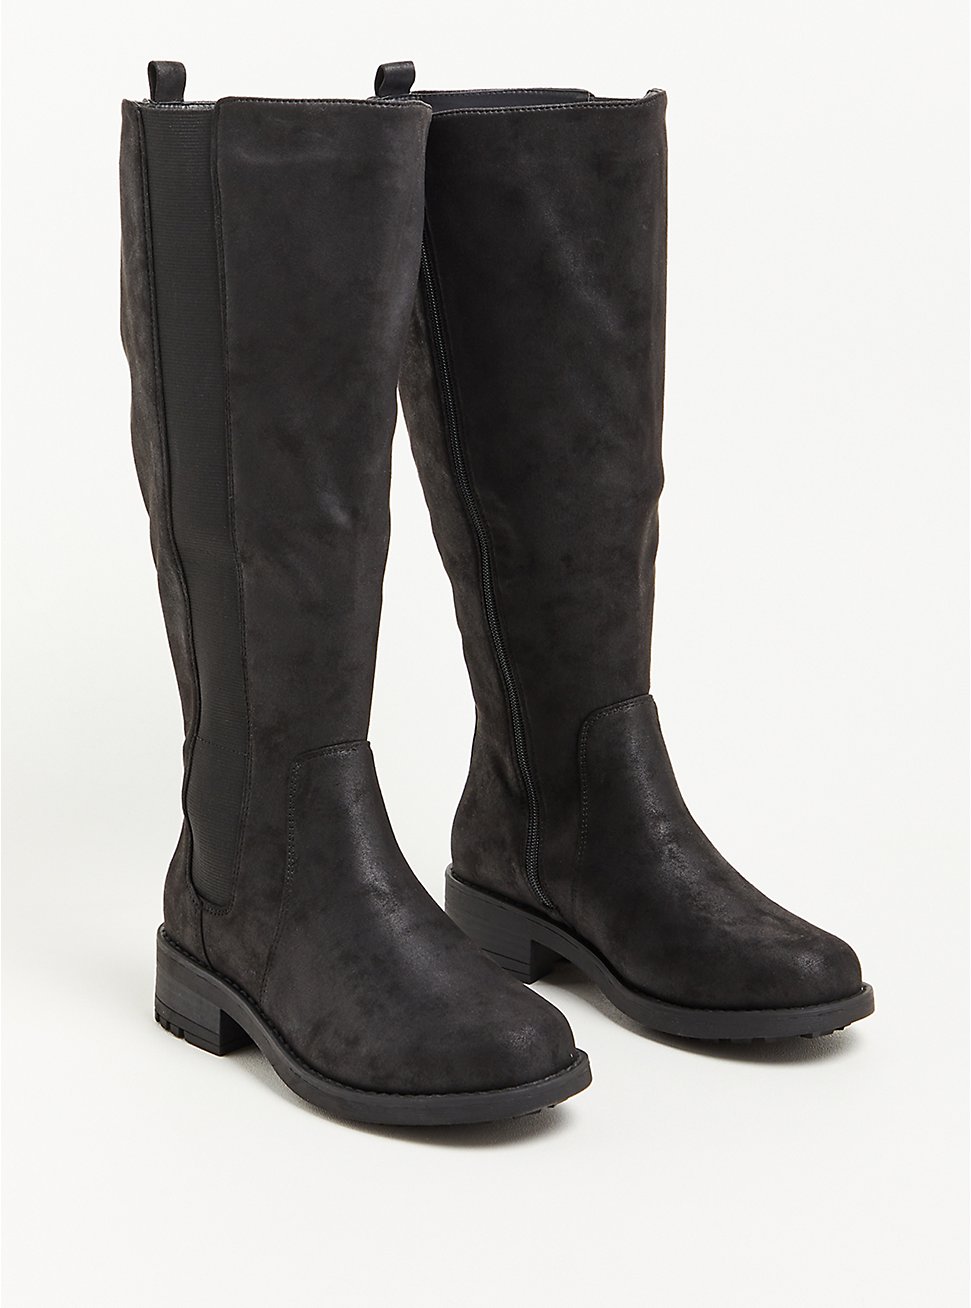 Plus Size Chelsea Knee Boot - Faux Oil Suede Black (WW), BLACK, hi-res